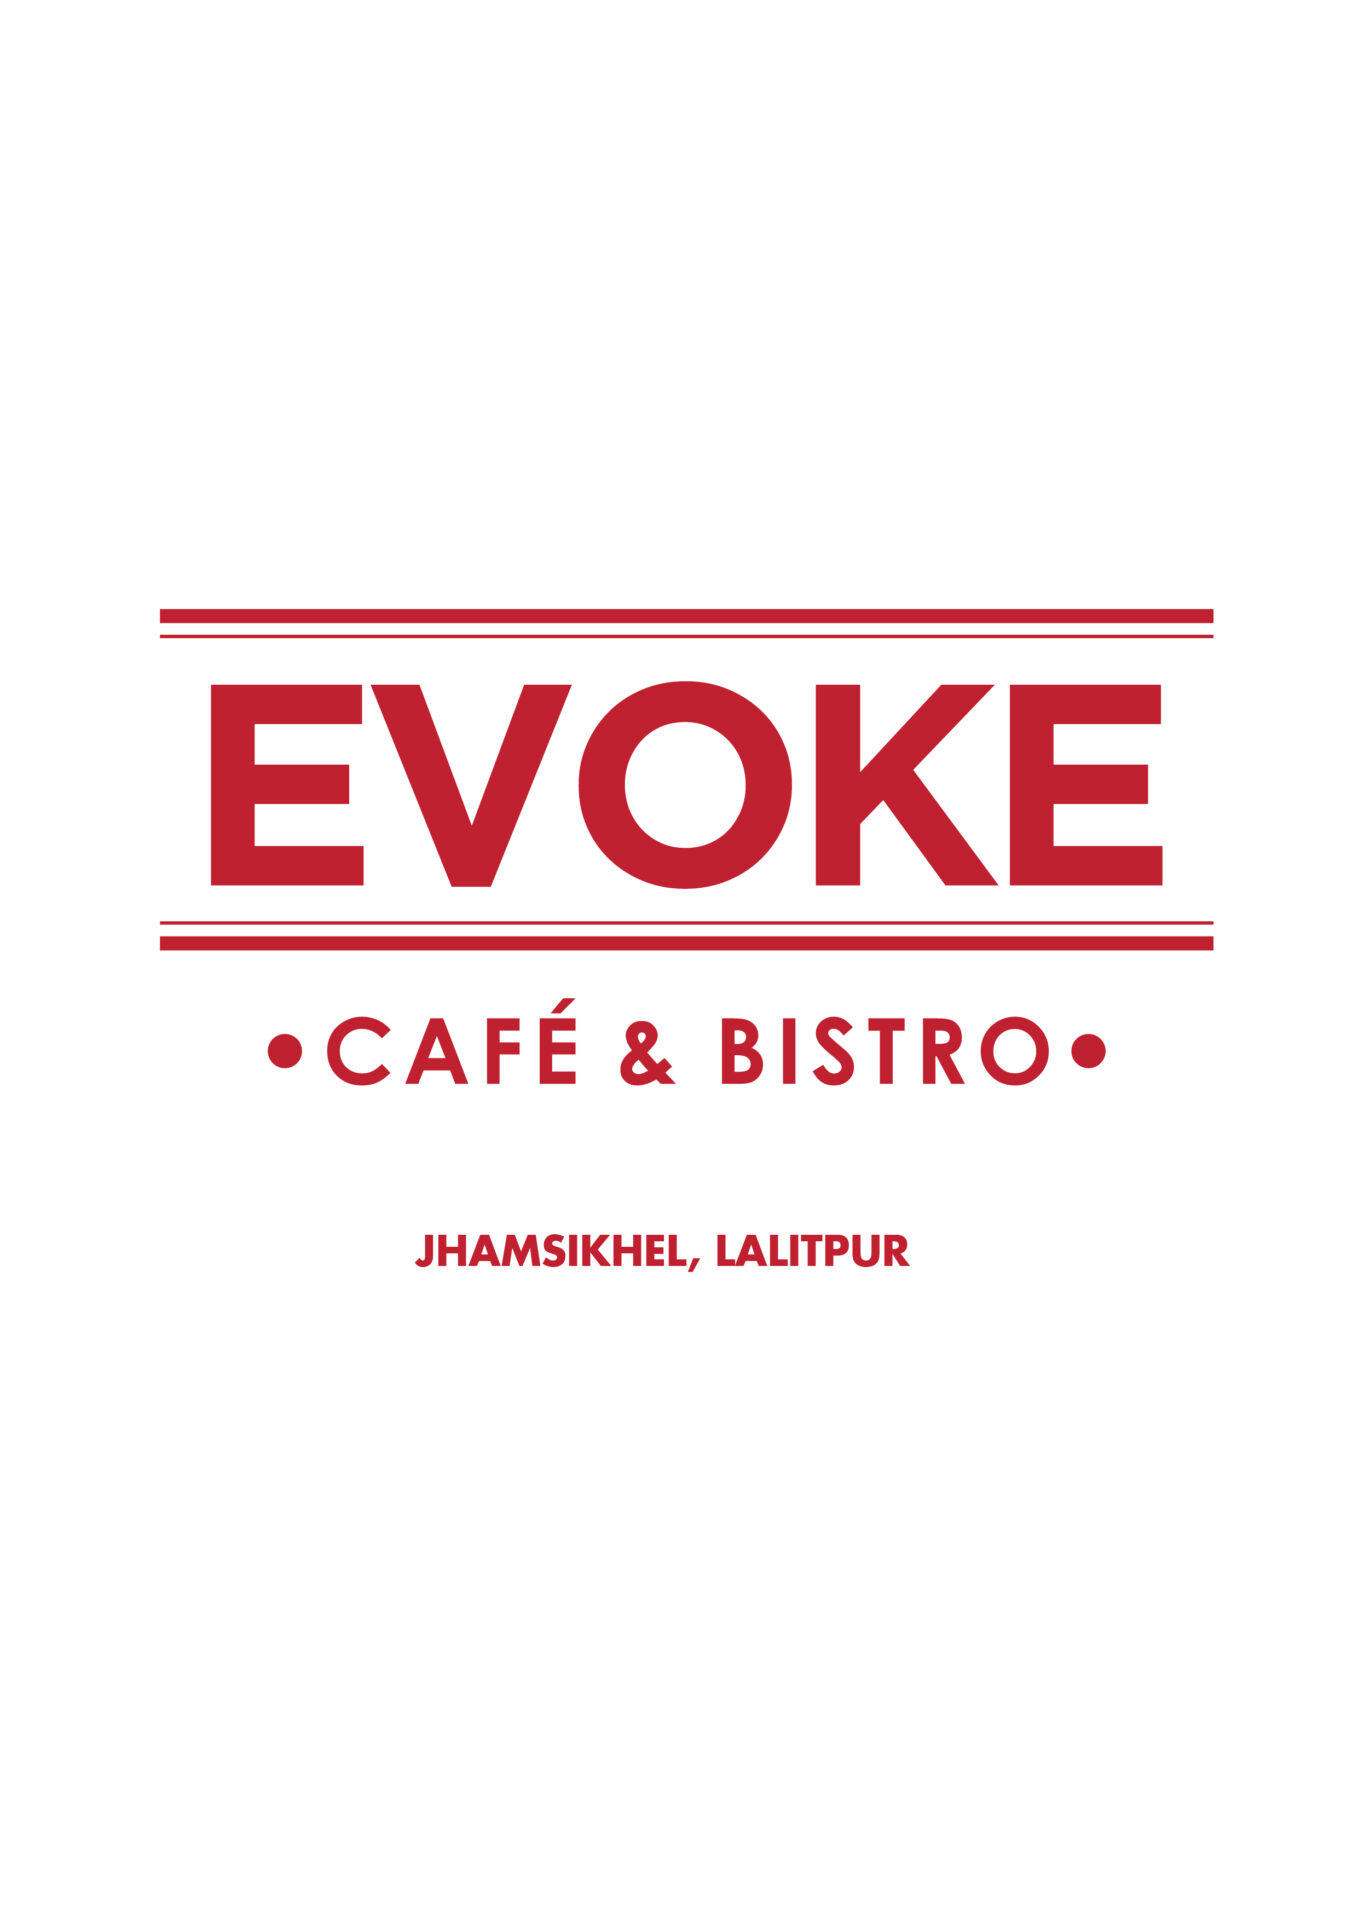 evoke menu img-01